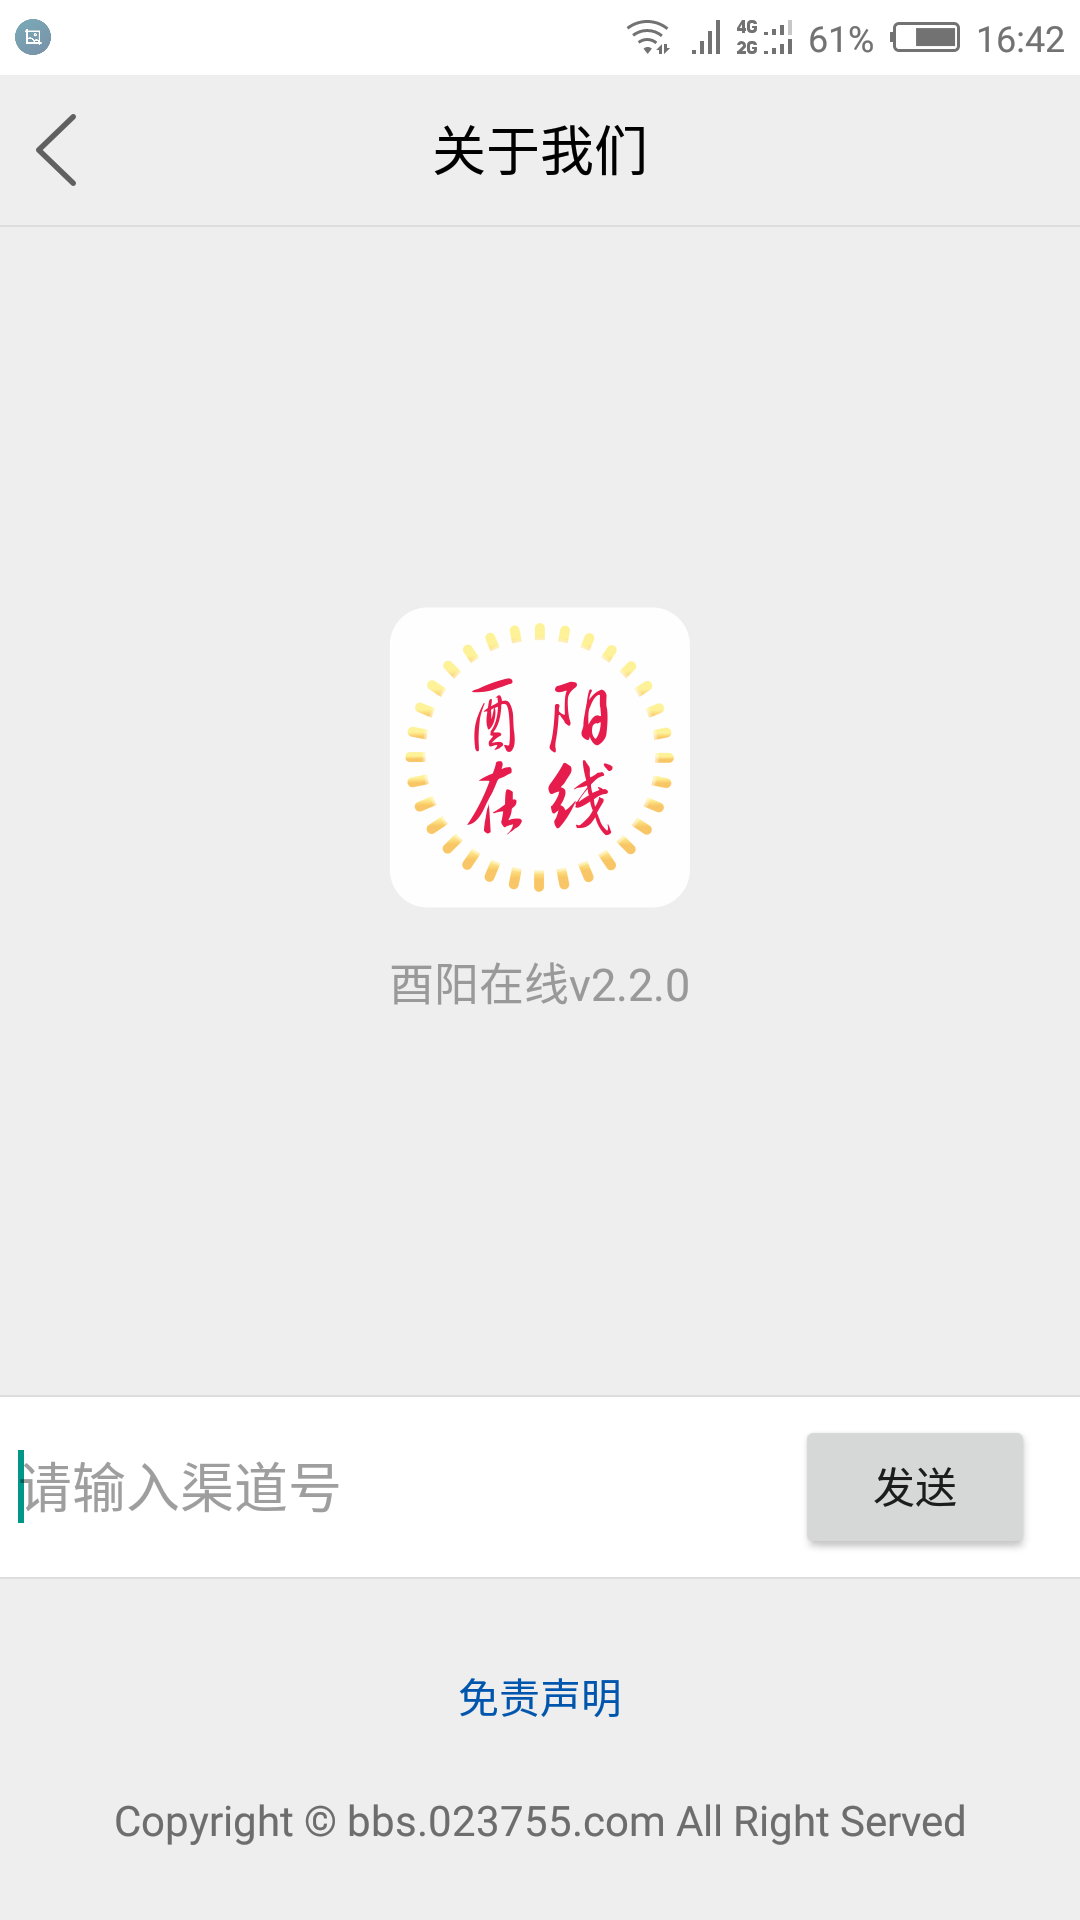 酉阳在线最新招聘信息app